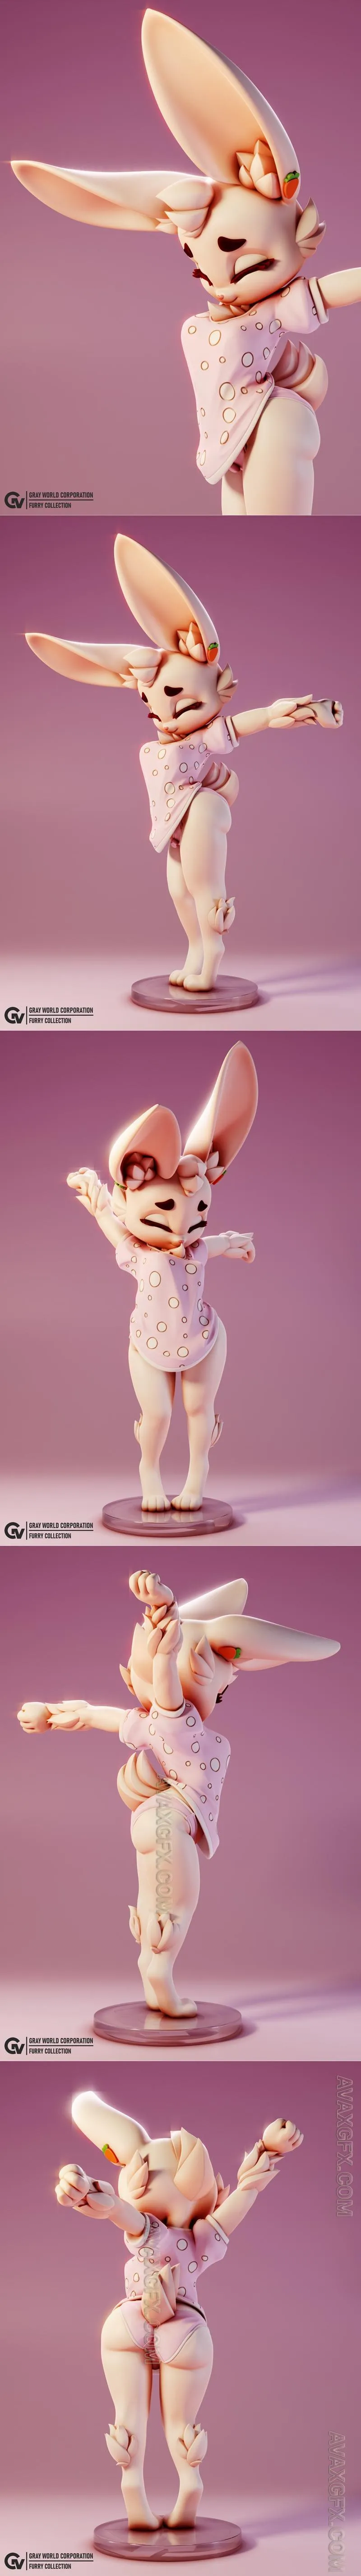 Bunny Morning - STL 3D Model